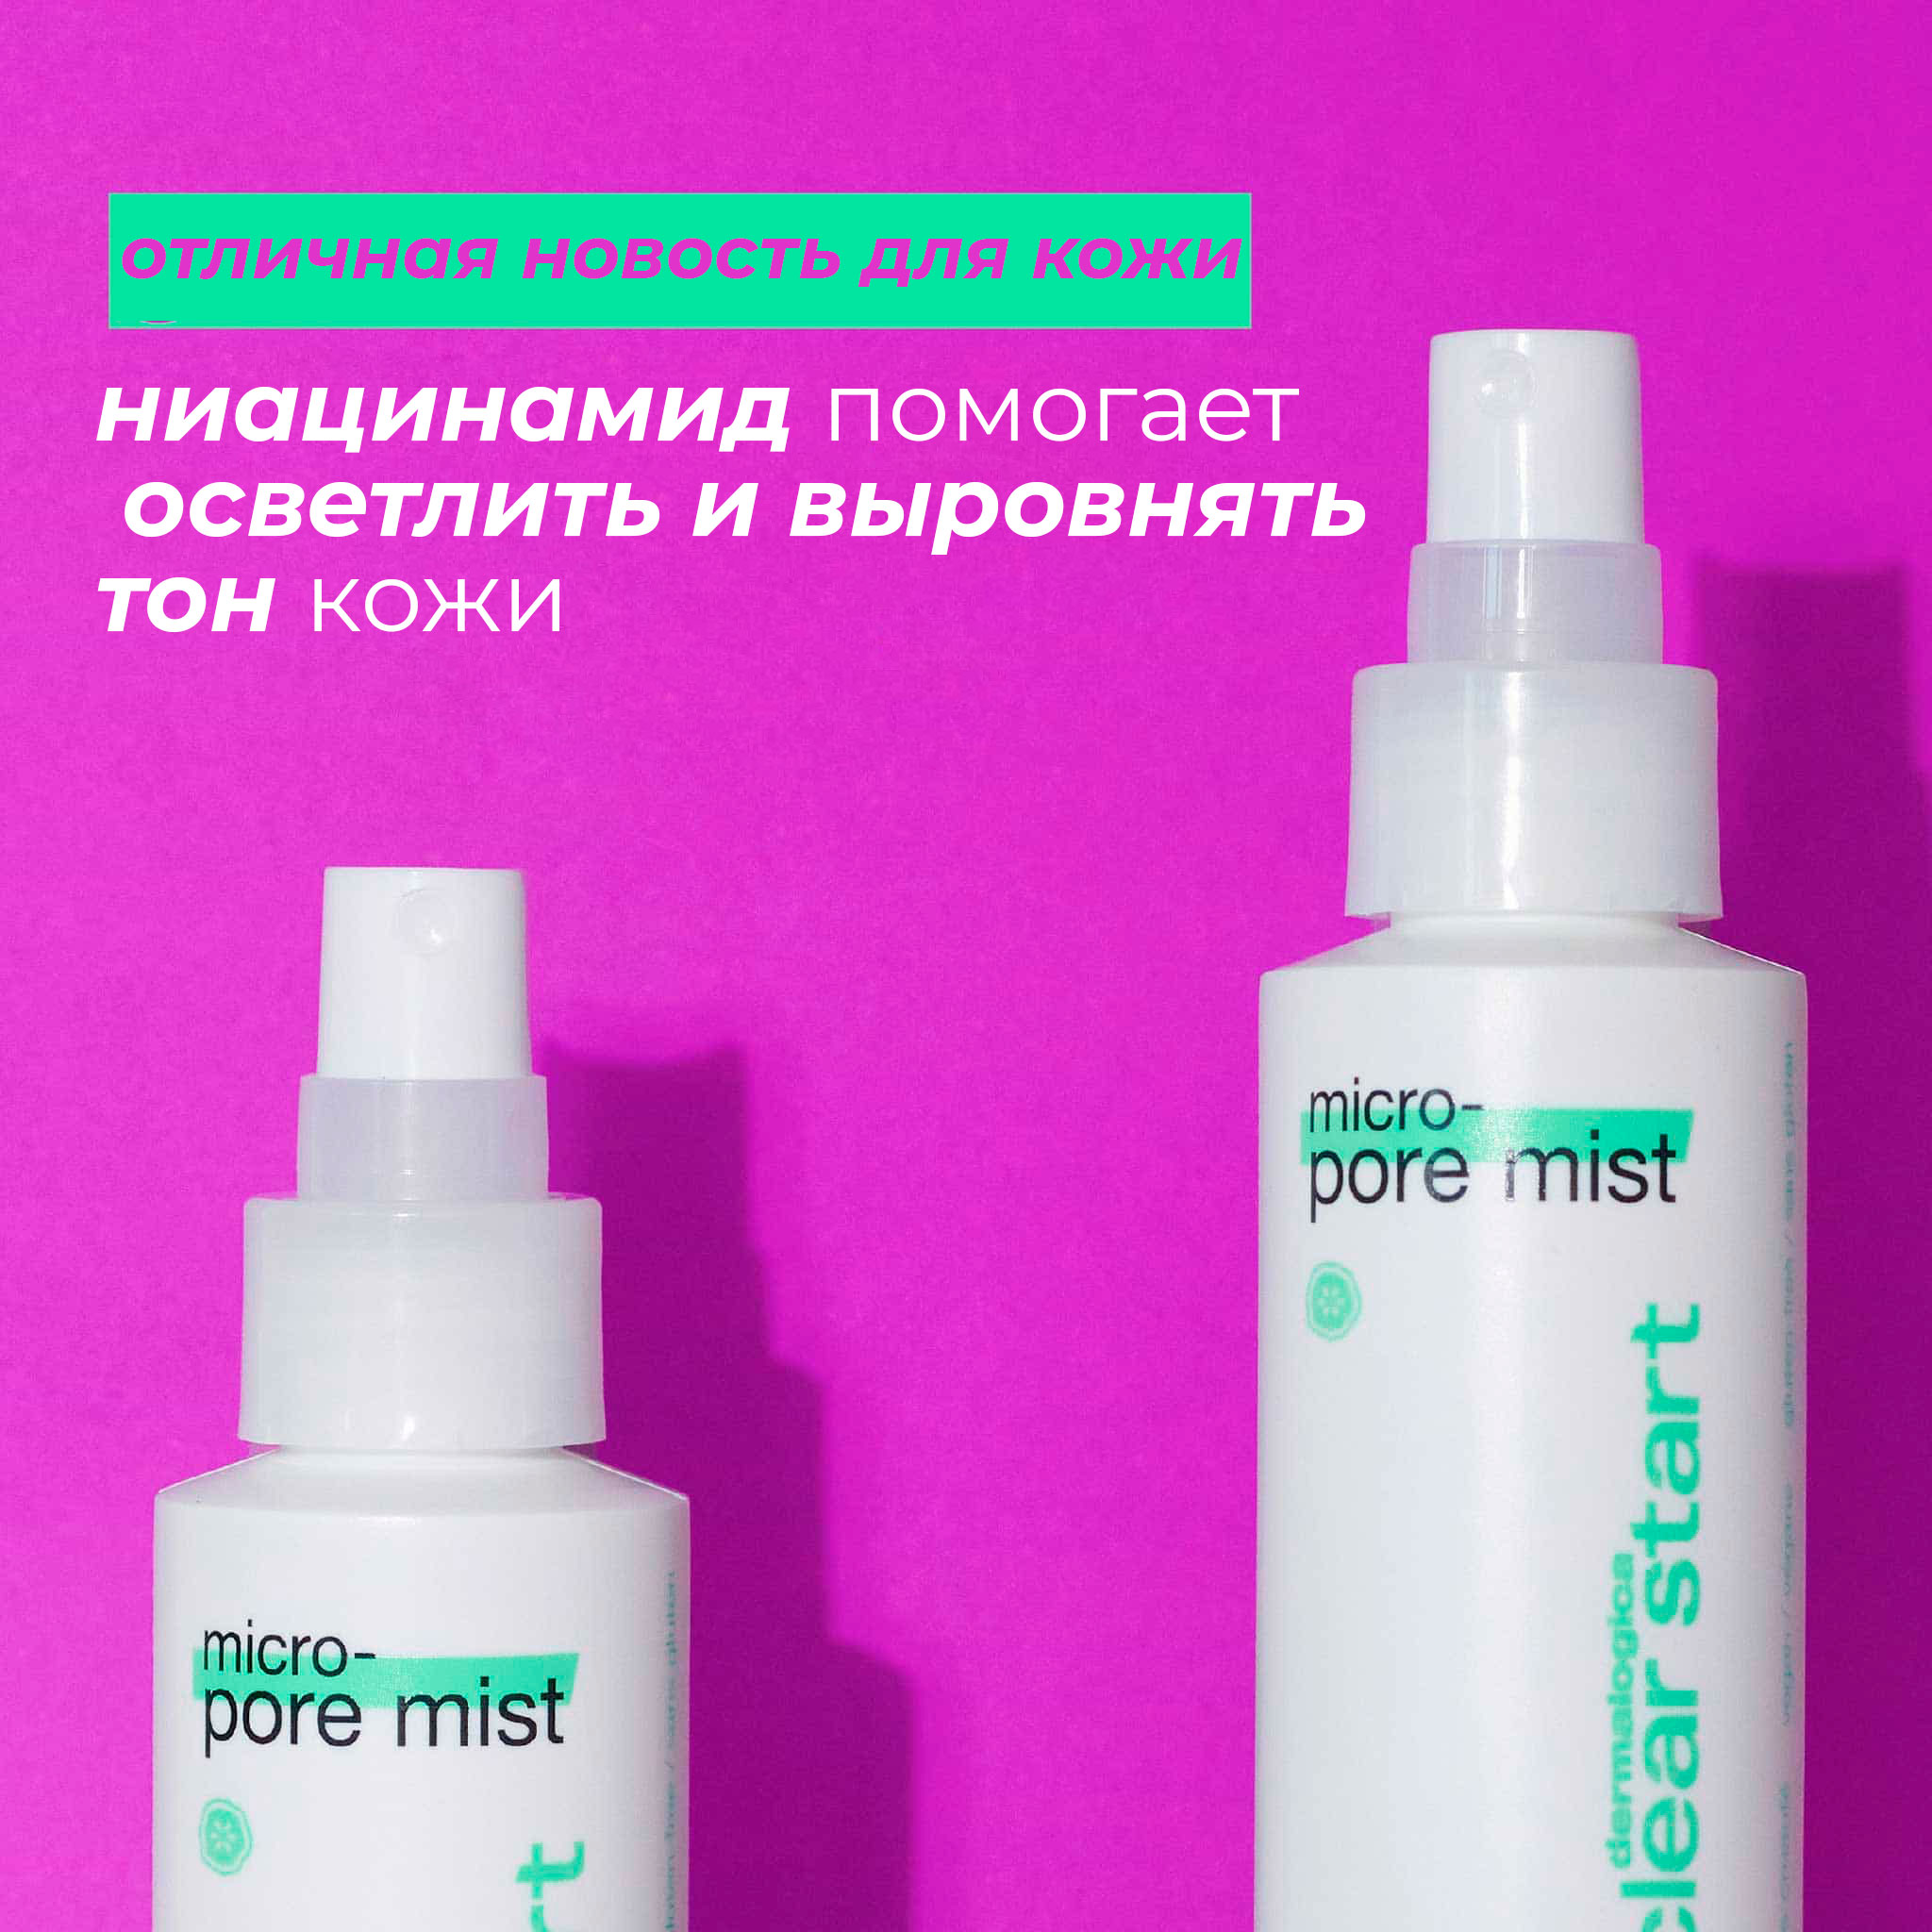 Micro-pore mist | Dermalogica®